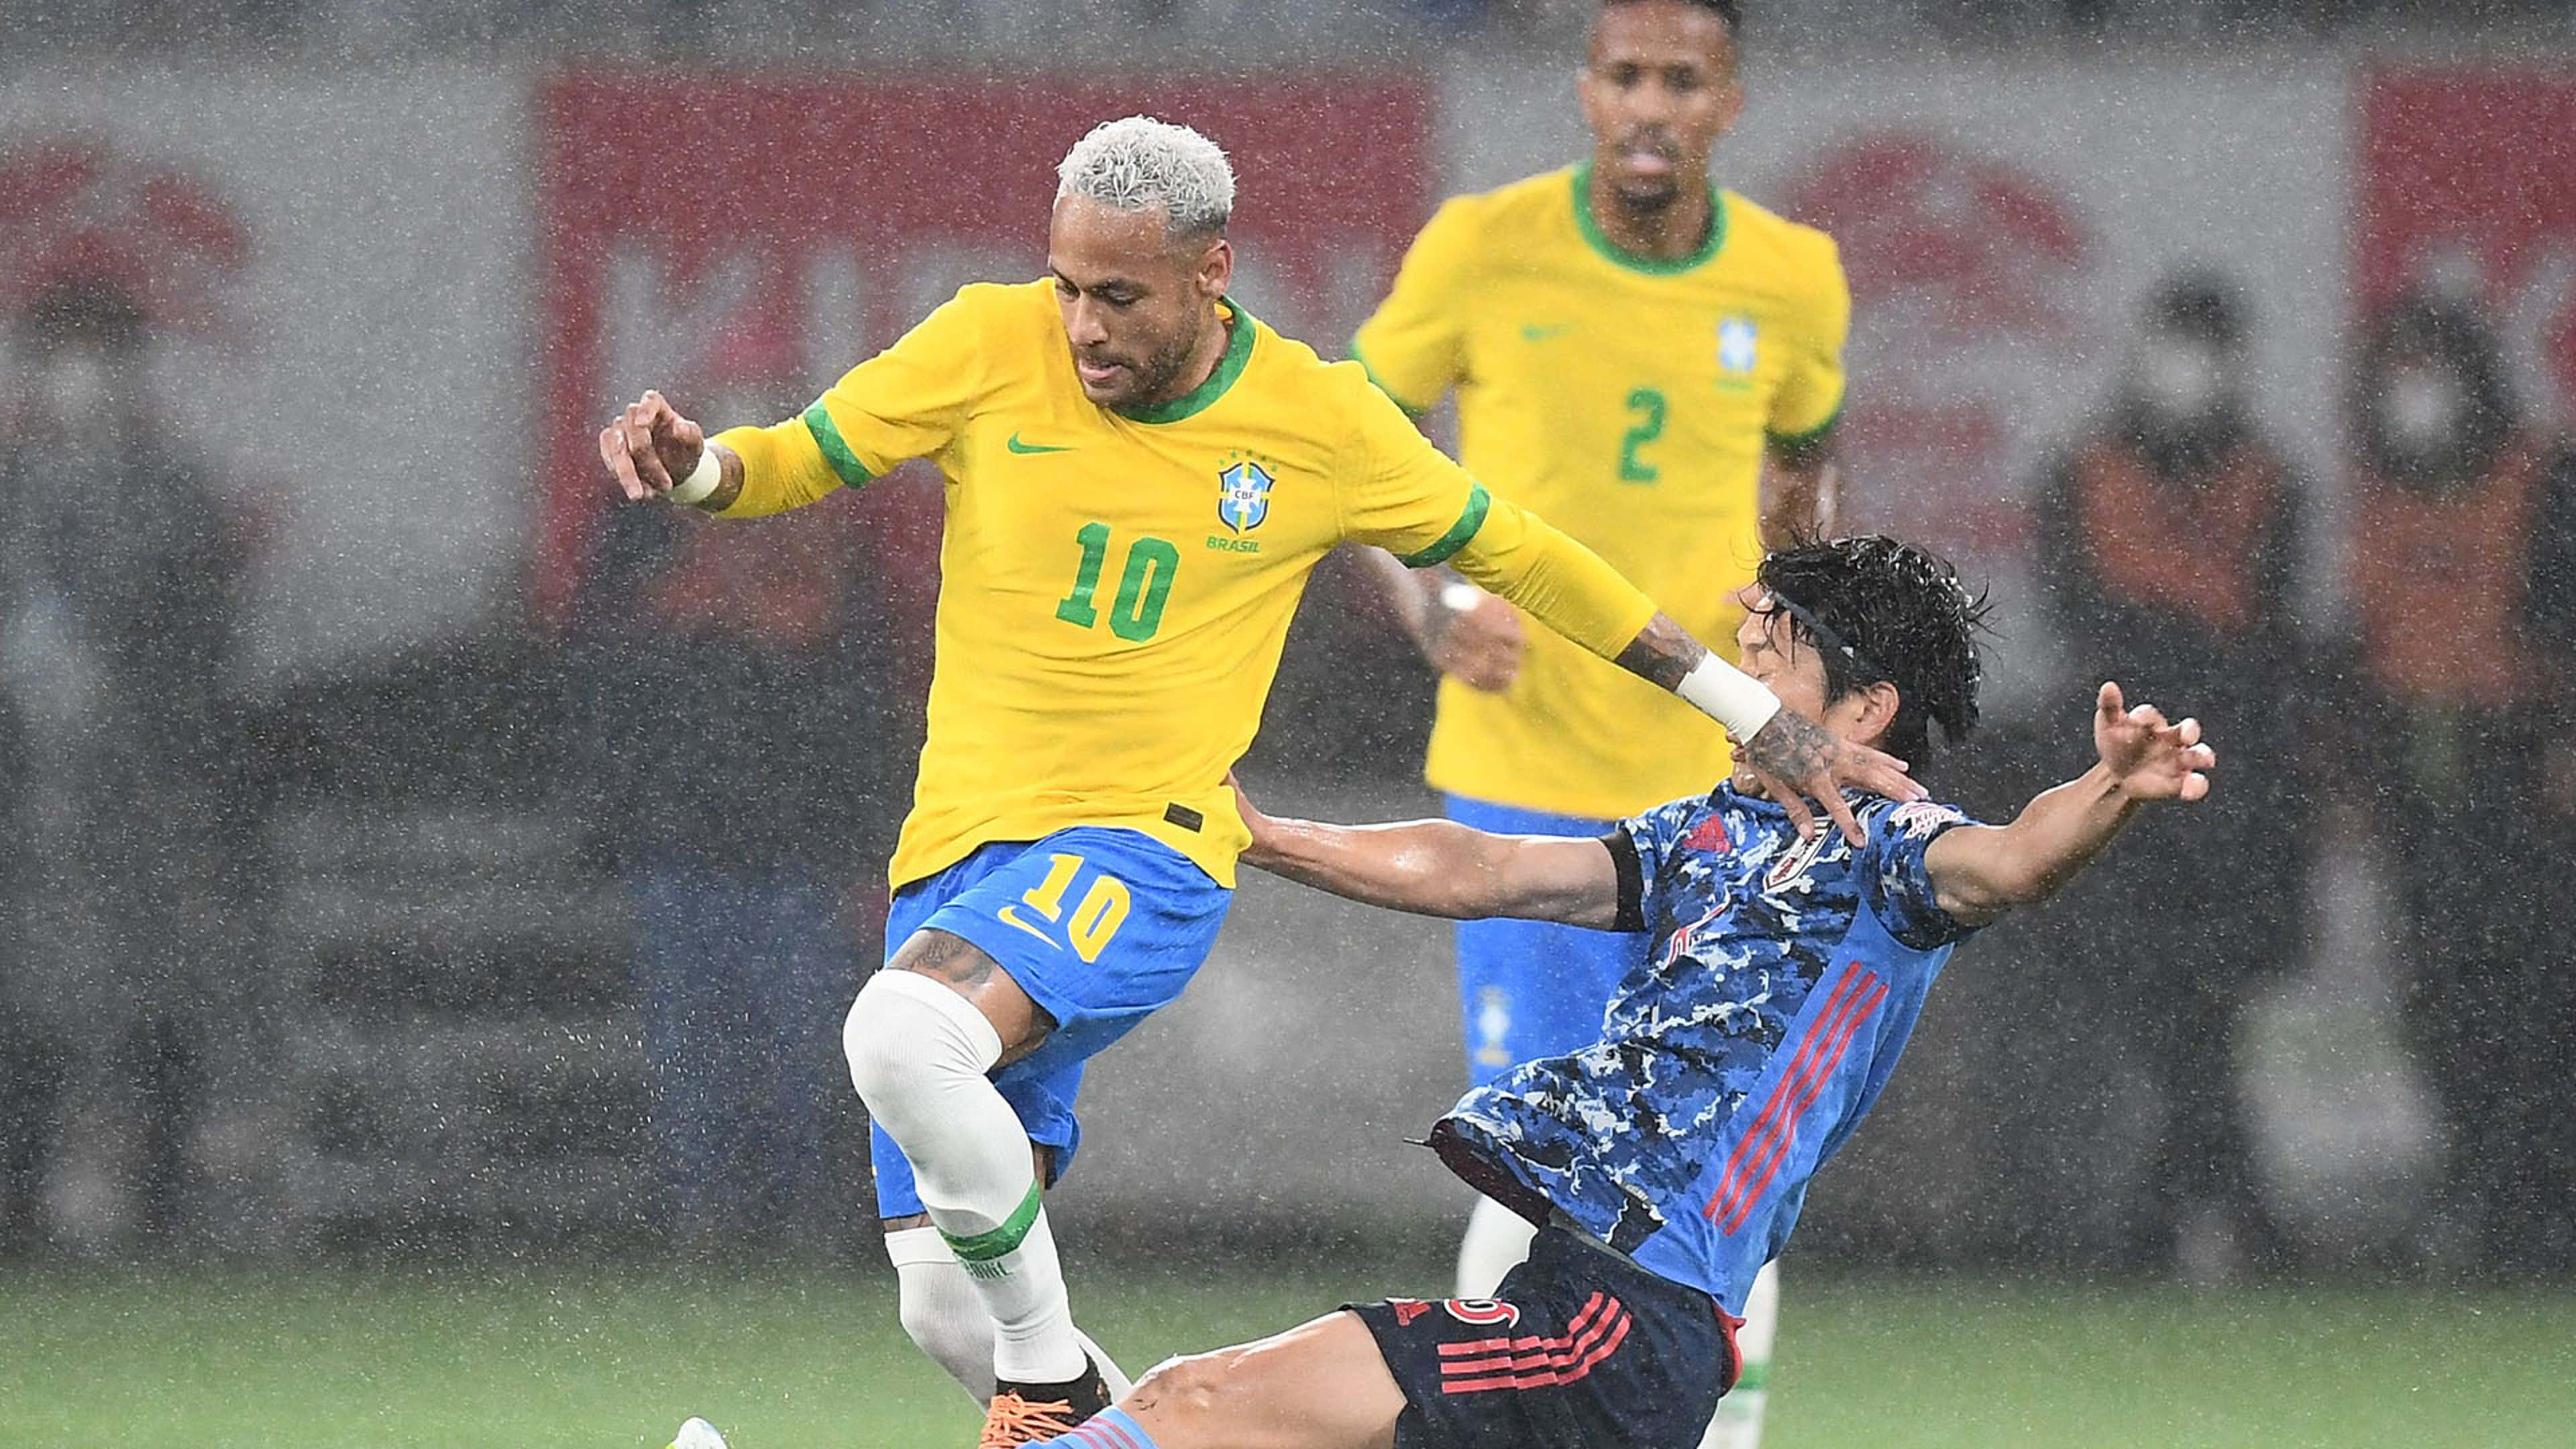 Brasil vence Japão no futebol em amistoso pré-Jogos Olímpicos